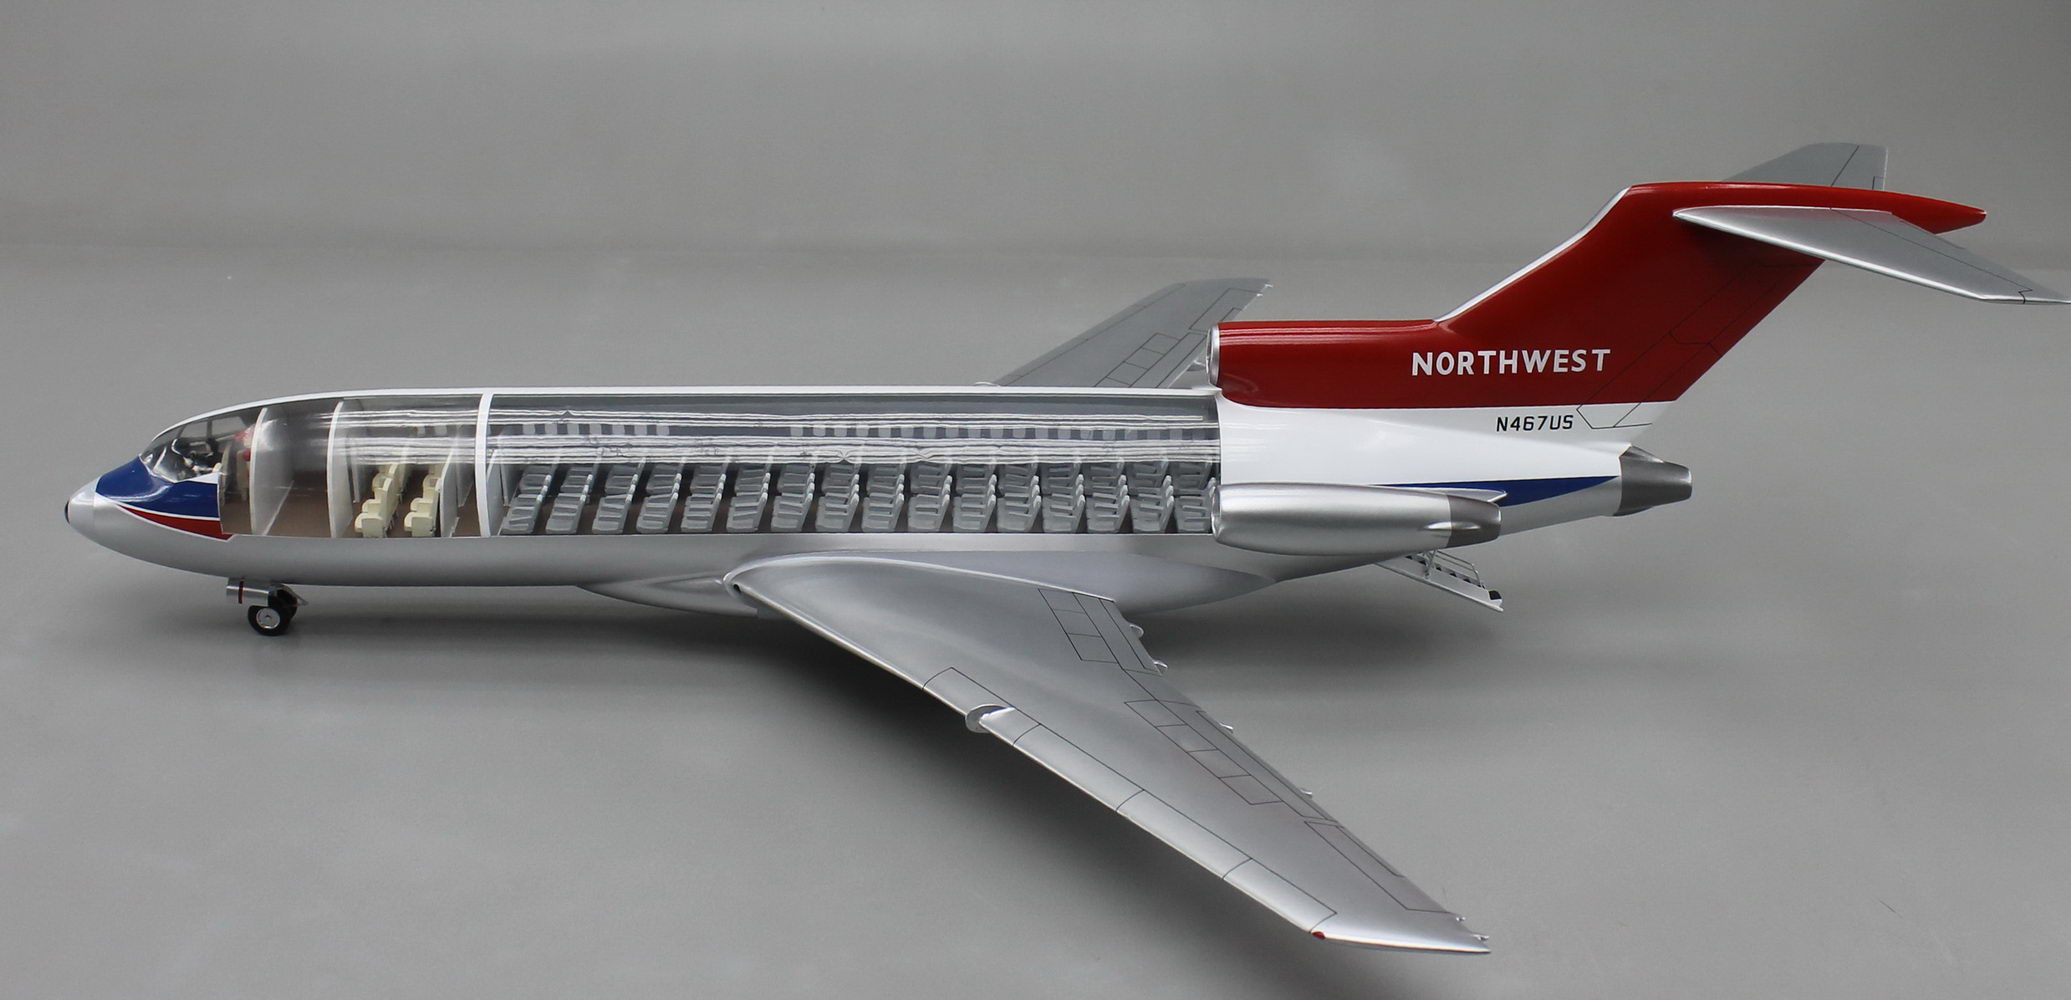 ボーイング727-100 ノースウェスト航空塗装仕様 内部開示精密モデル